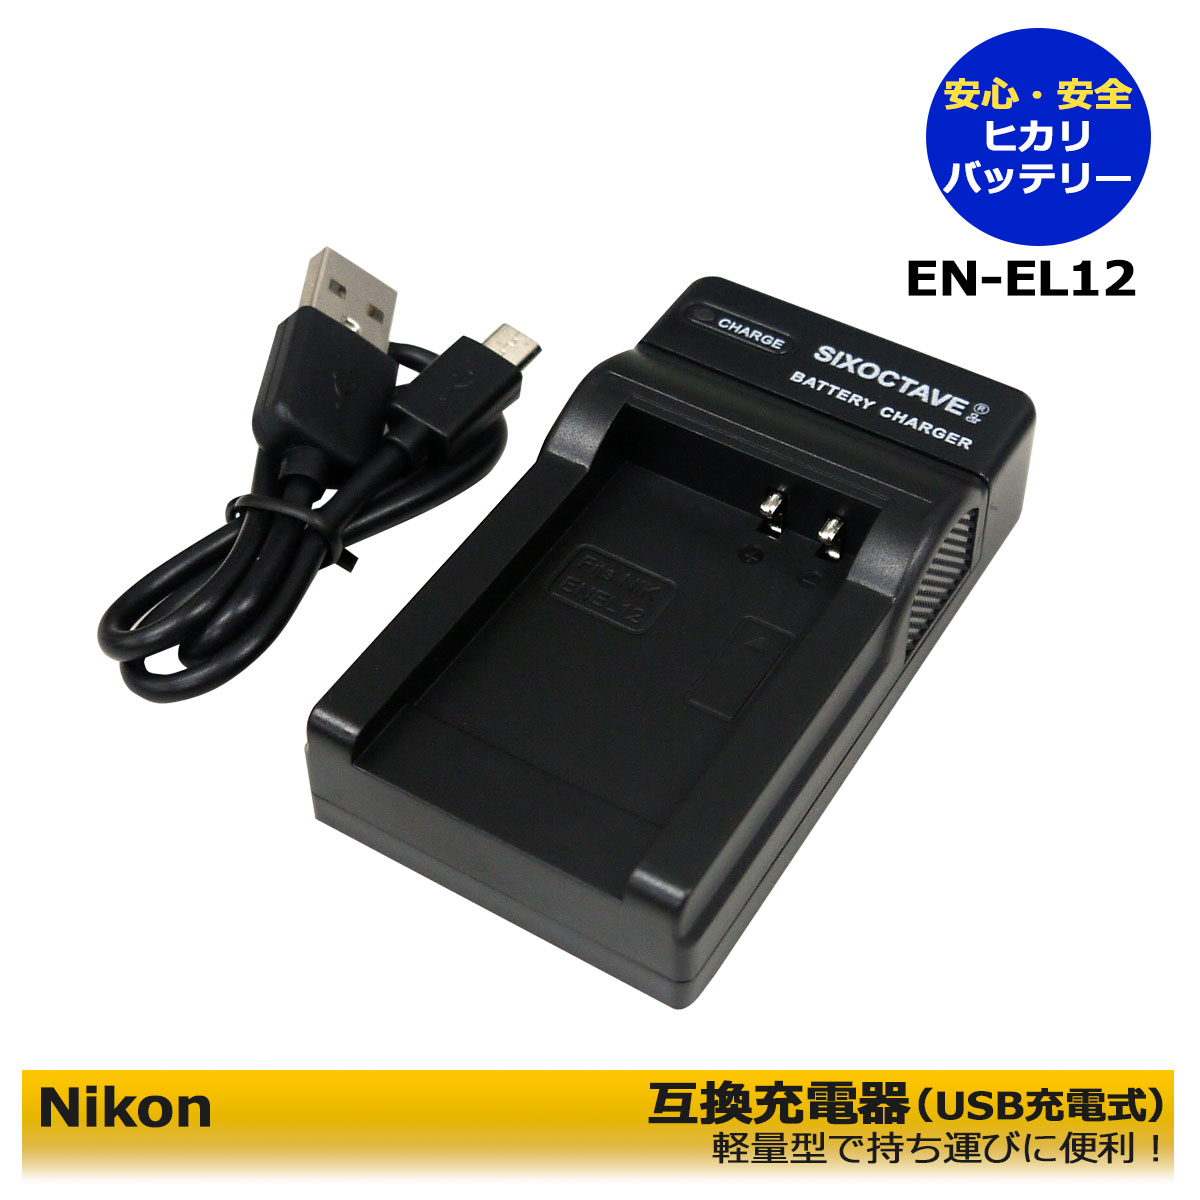 EN-EL12互換USB充電器coolpix S8100 / Coolpix